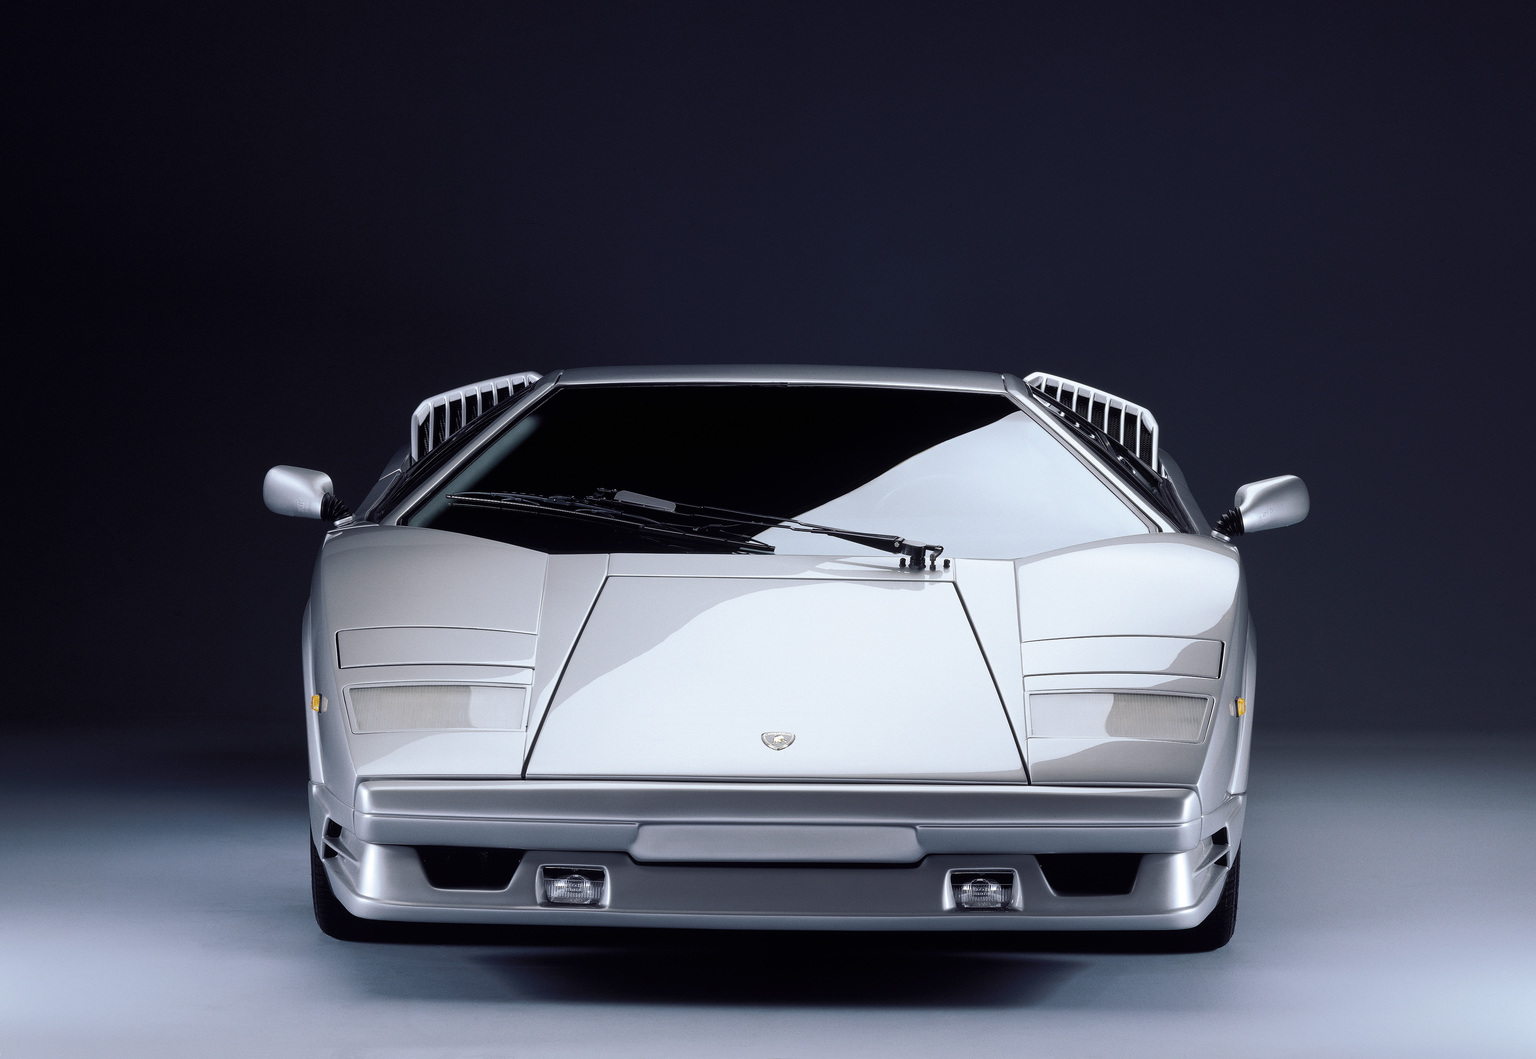 1988→1990 Lamborghini Countach 25th Anniversario